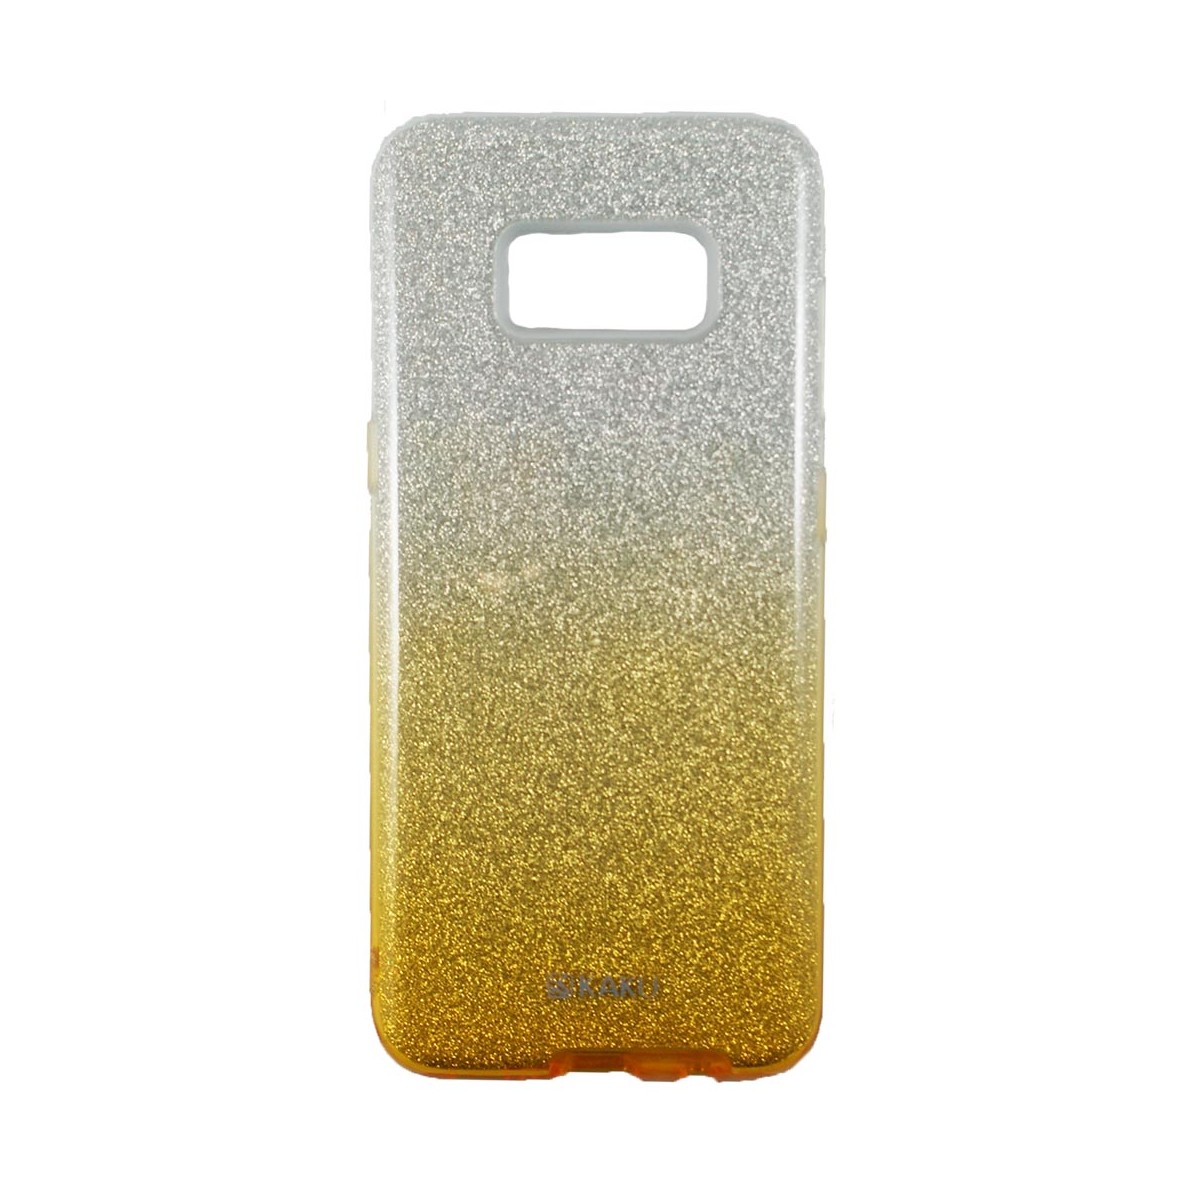 Coque Galaxy S8 Plus à paillettes dorées et argentées - Kaku